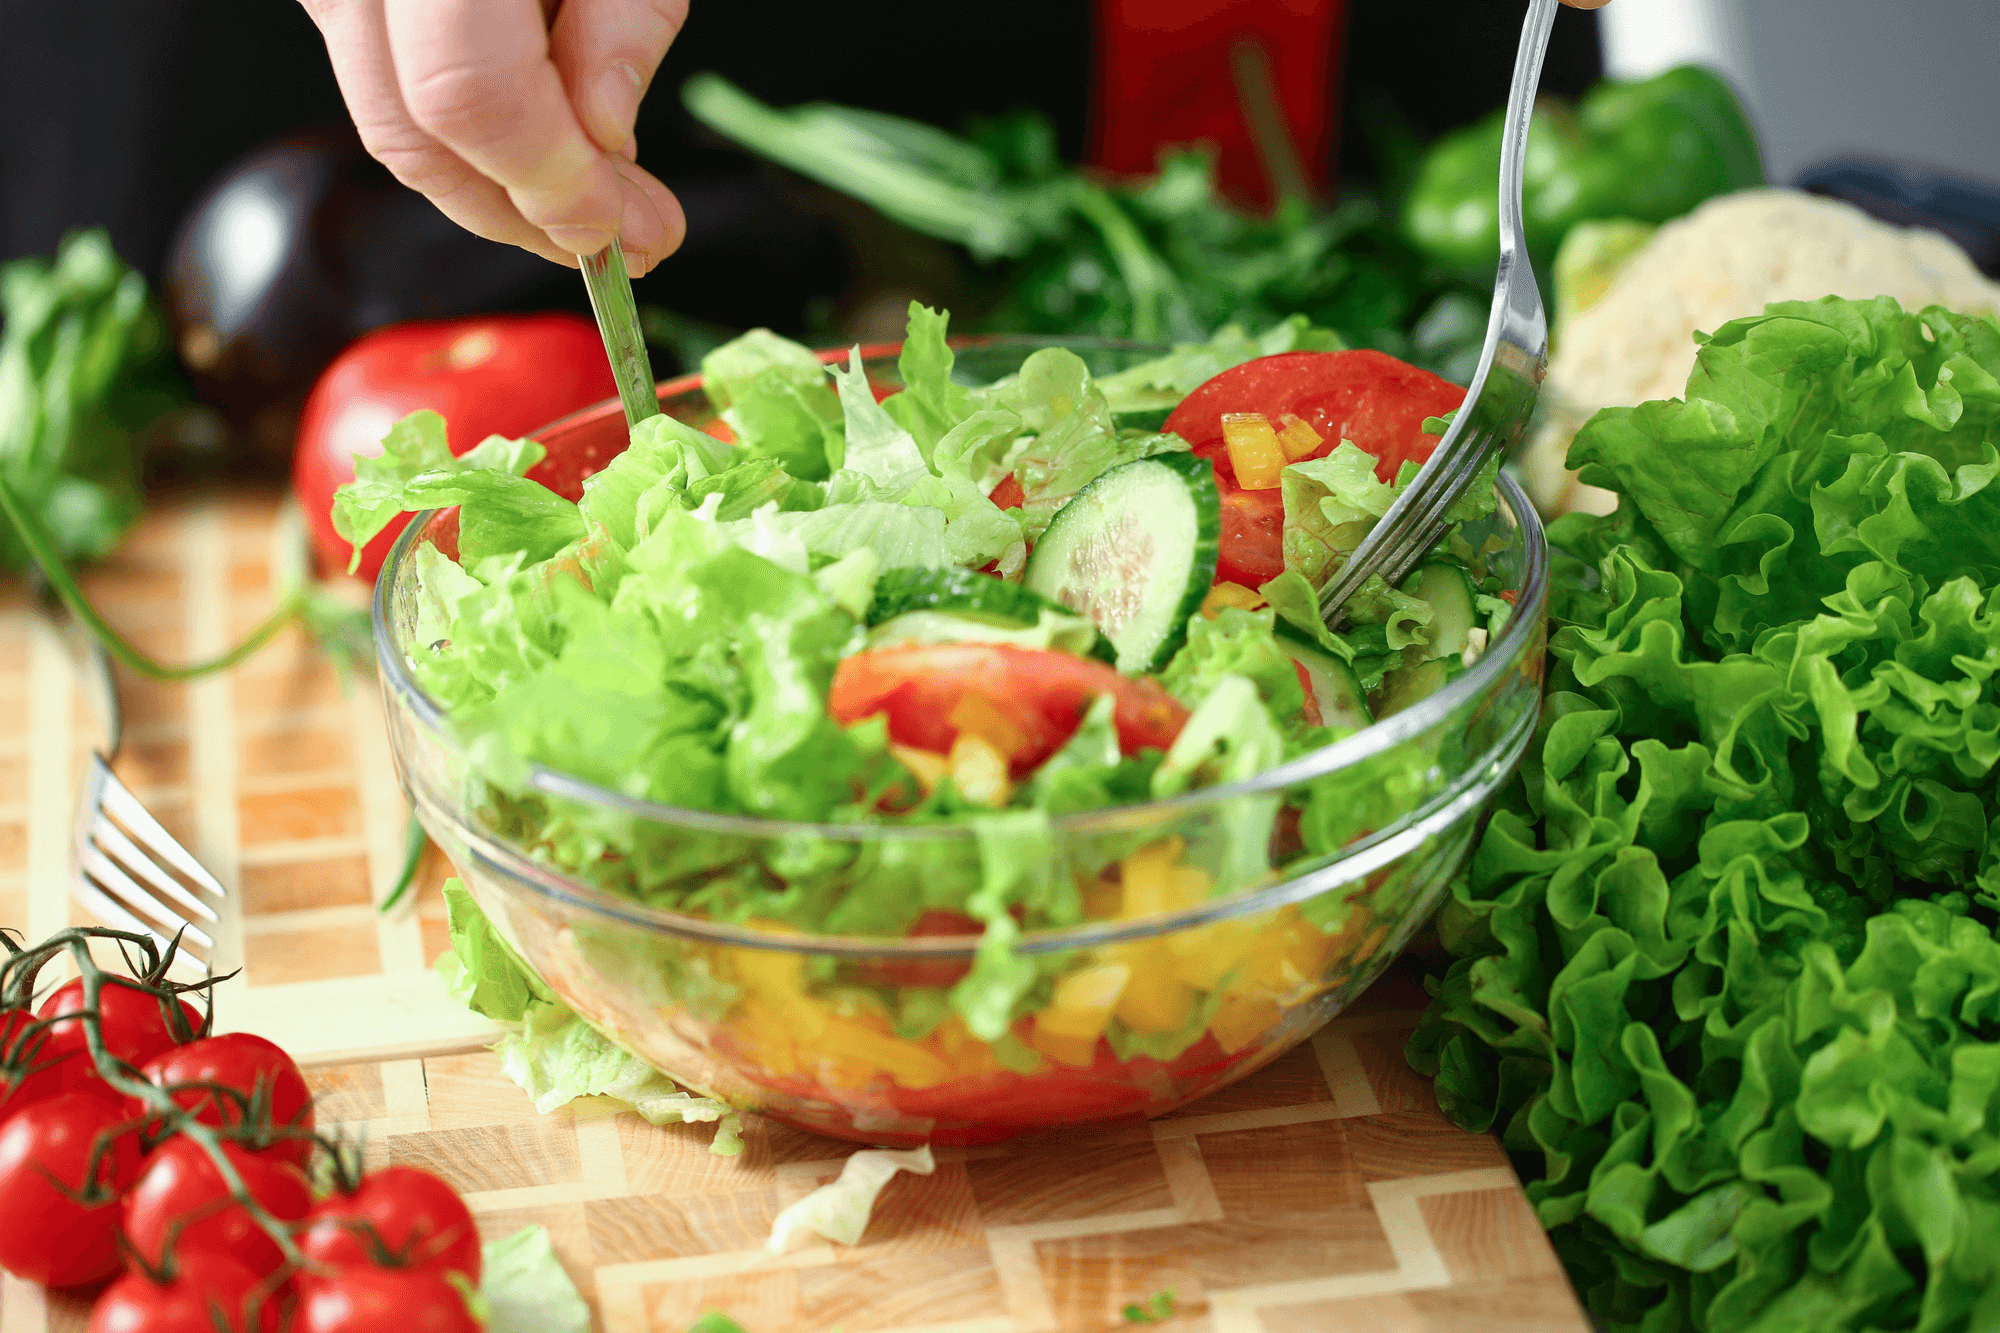 内臓脂肪を減らす生活習慣の二つ目は、食事の習慣。野菜から食べ、食物繊維を多く摂ろう。サラダのイメージ写真